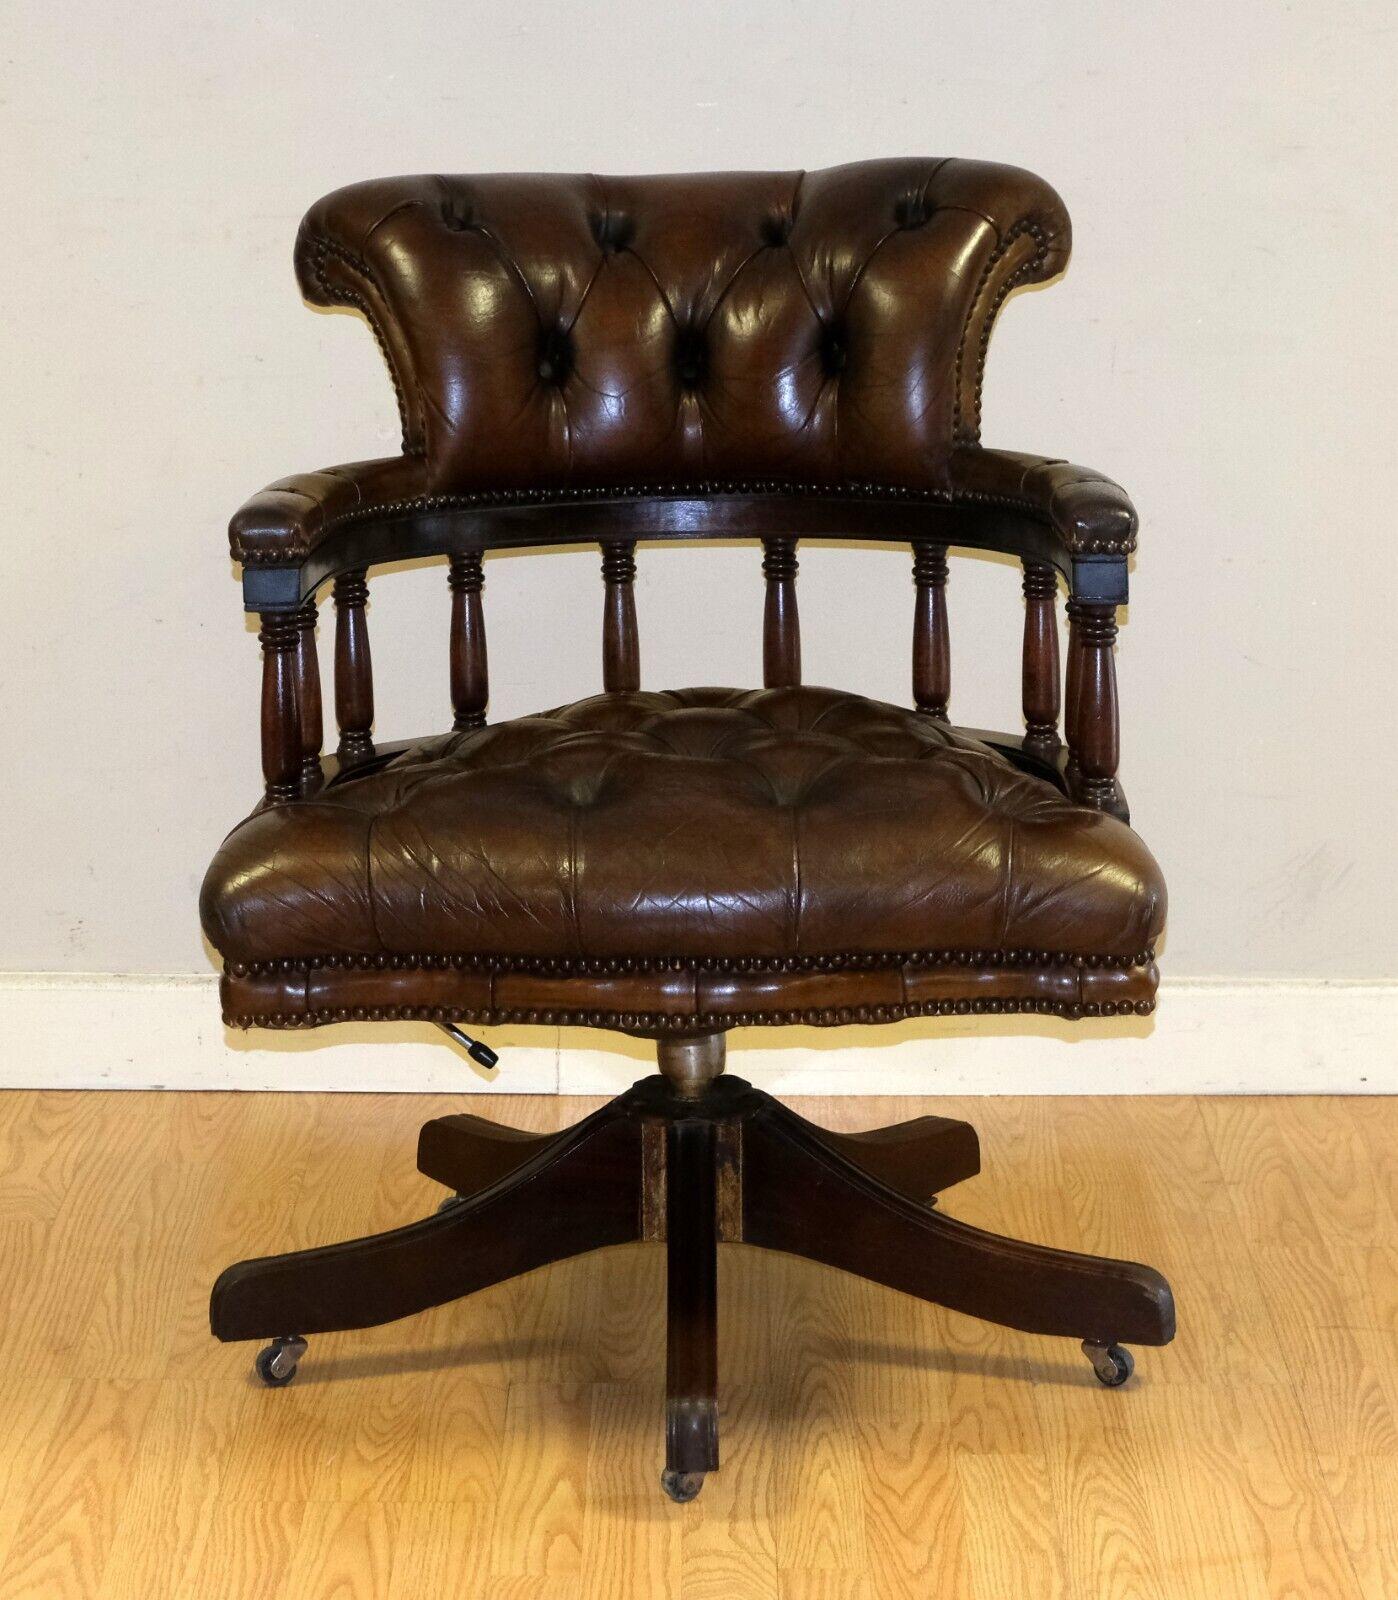 Wir freuen uns, diesen wunderschönen, vollständig restaurierten Chesterfield-Sessel aus zigarrenbraunem Leder mit Eichengestell zum Verkauf anzubieten.

Dieses Stück vereint Stil und Attraktivität und verleiht Ihrem Büro oder jedem anderen Raum